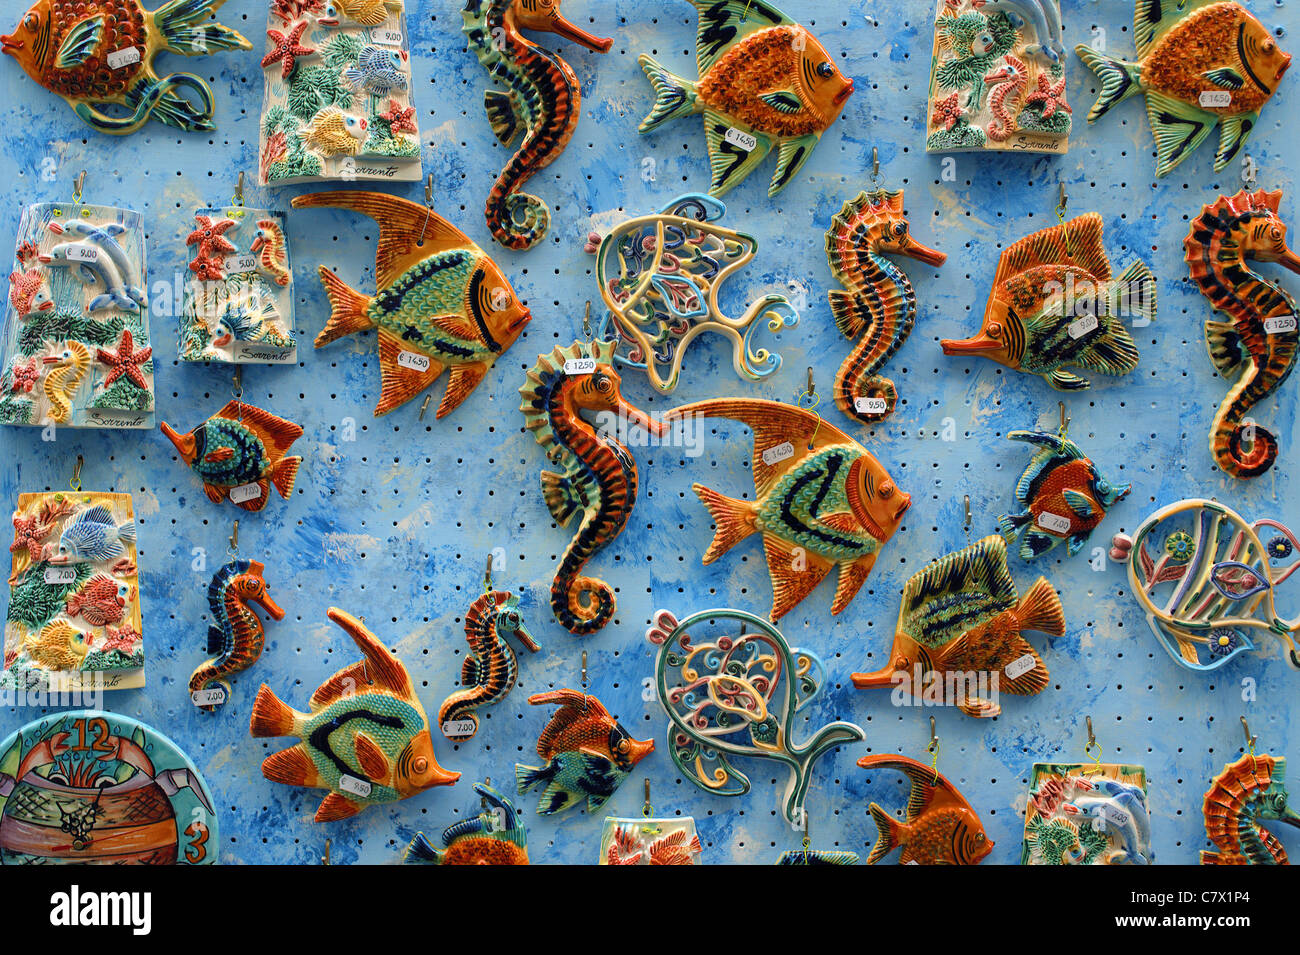 Les hippocampes colorés en céramique et les poissons exposés à la vente Sorrento Italie Banque D'Images